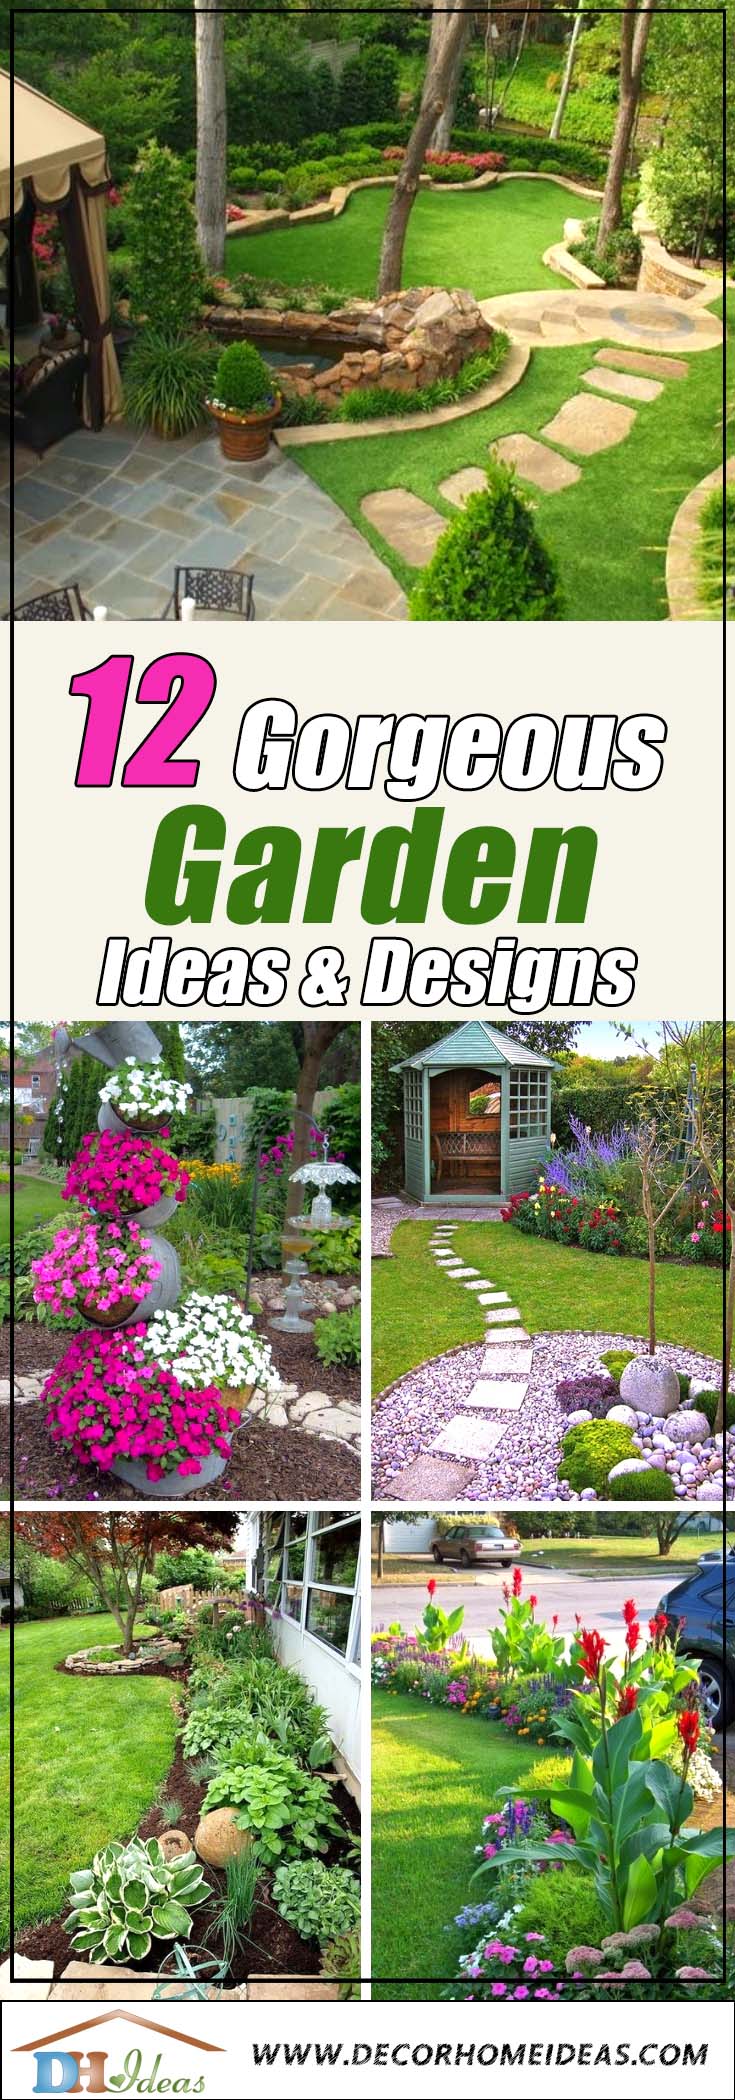 Gorgeous Garden Ideas